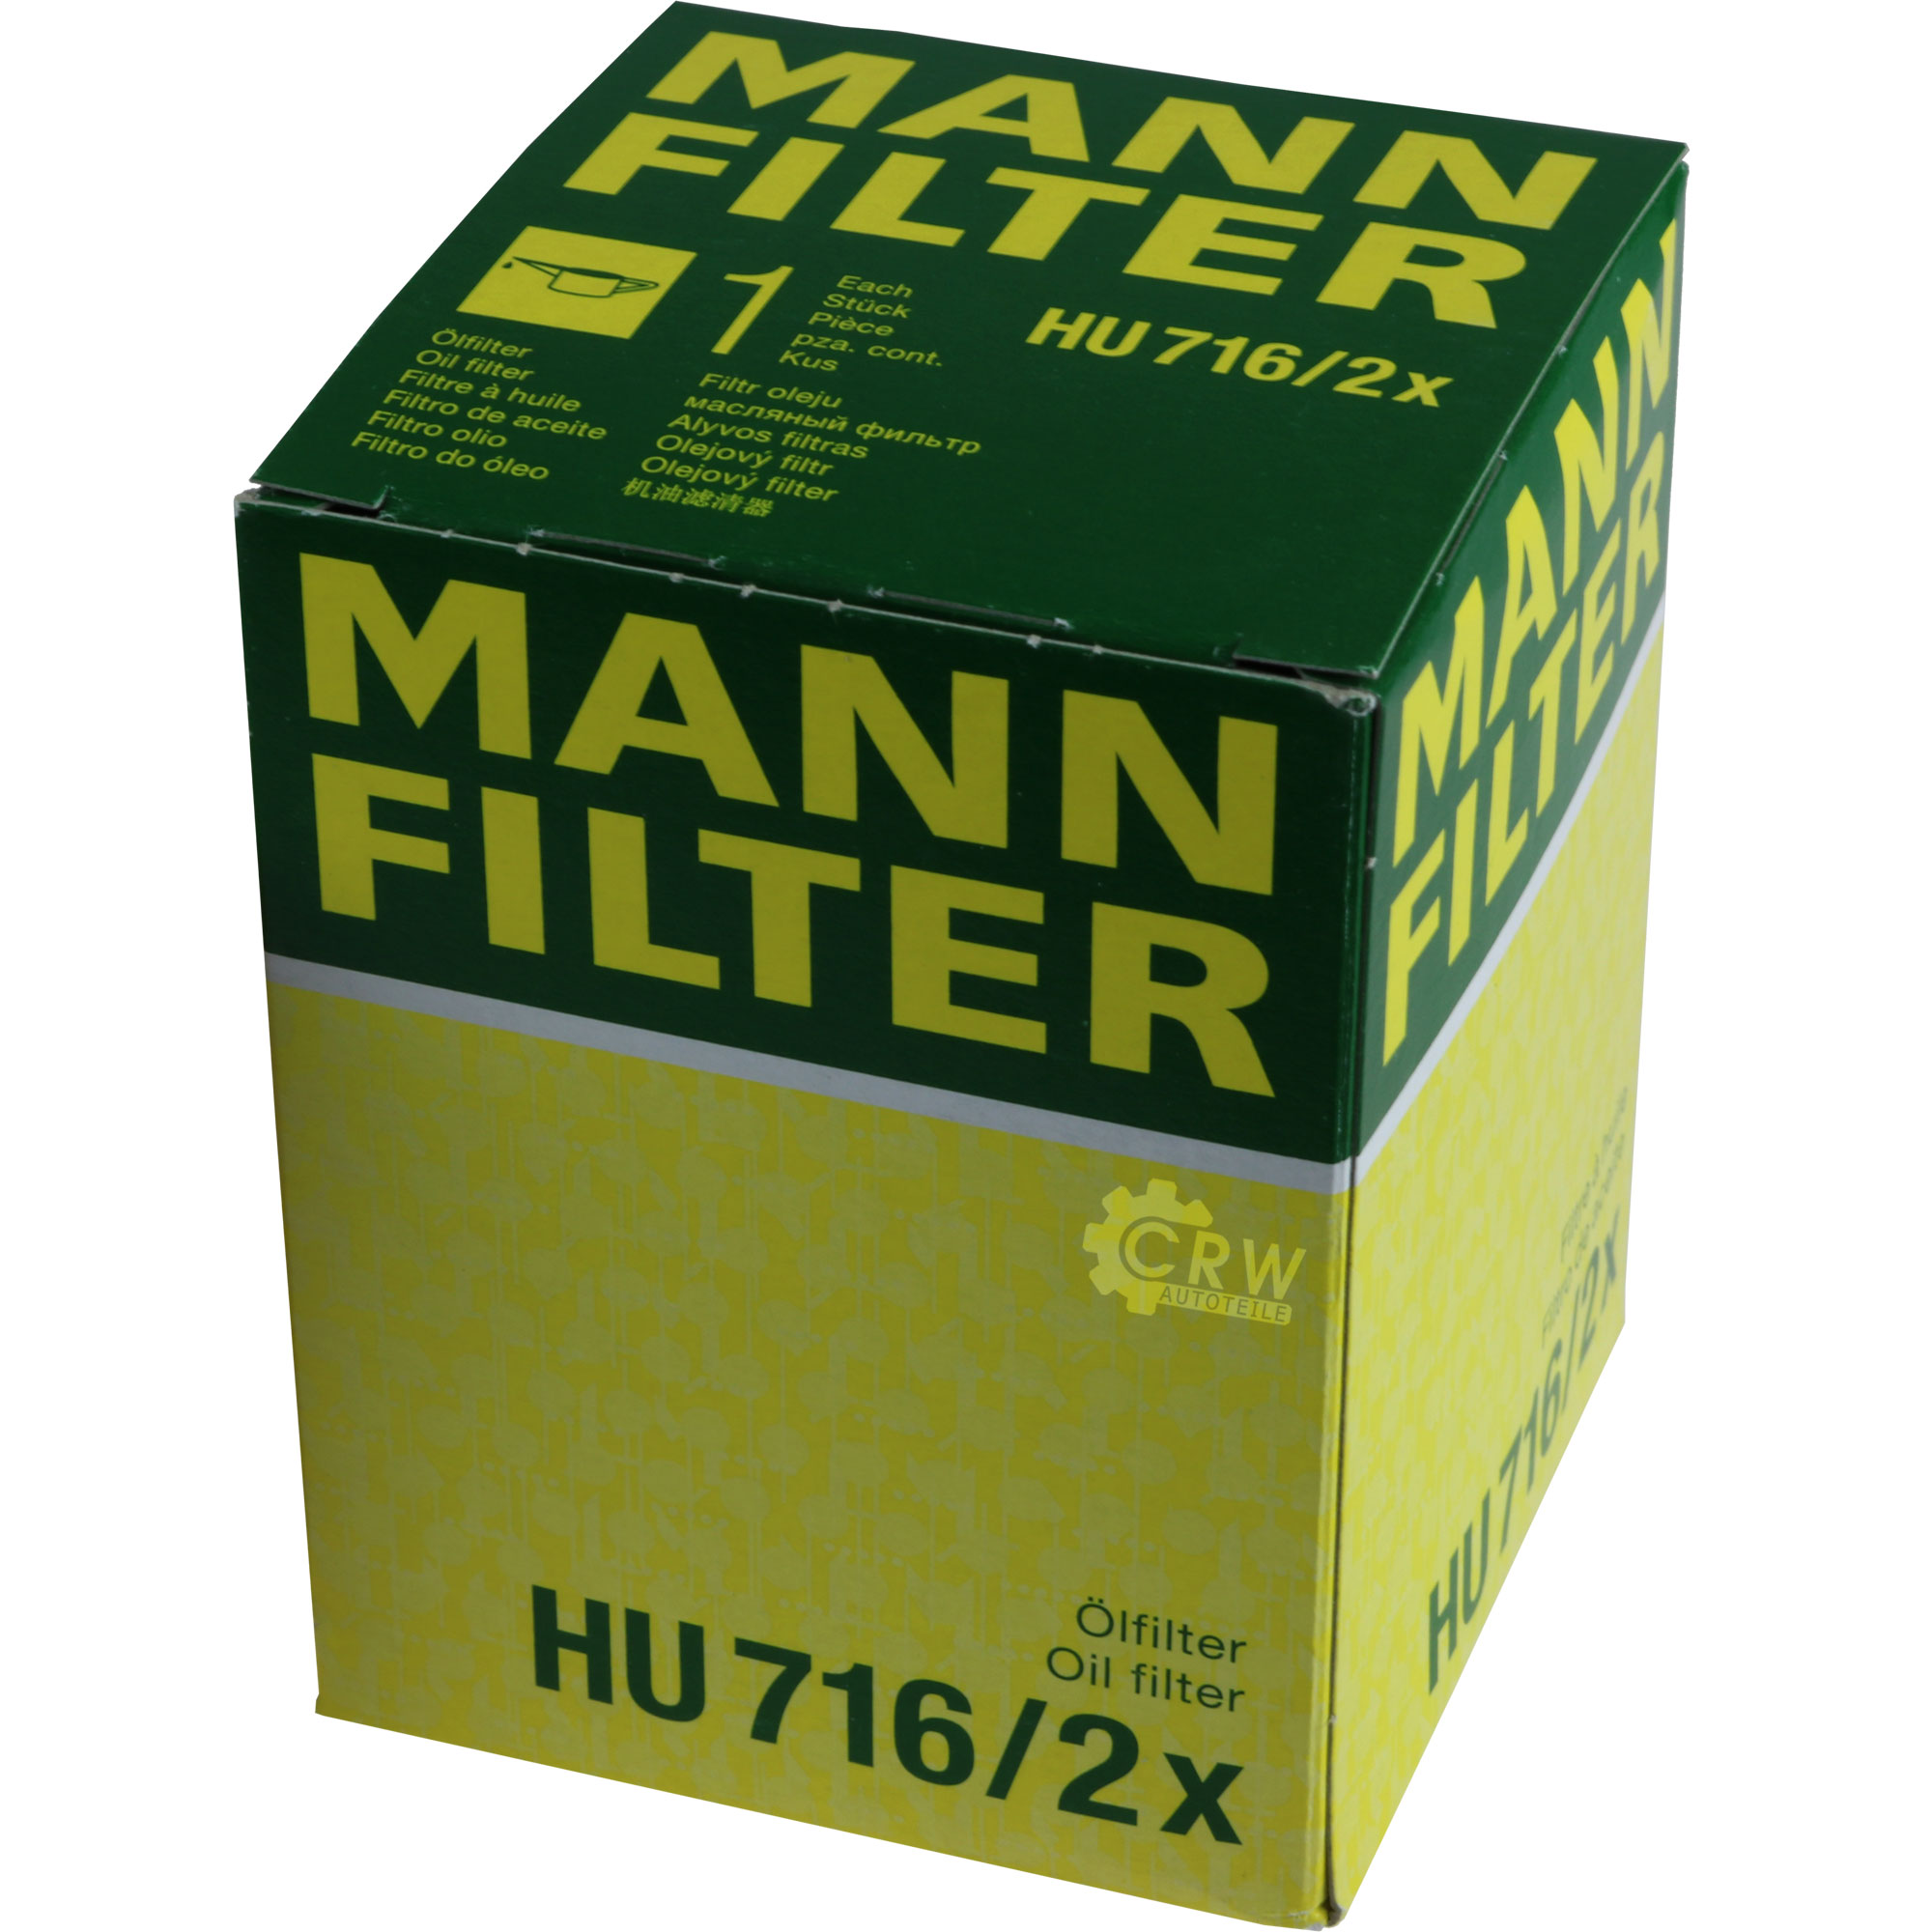 MANN-FILTER Ölfilter HU 716/2 x Oil Filter